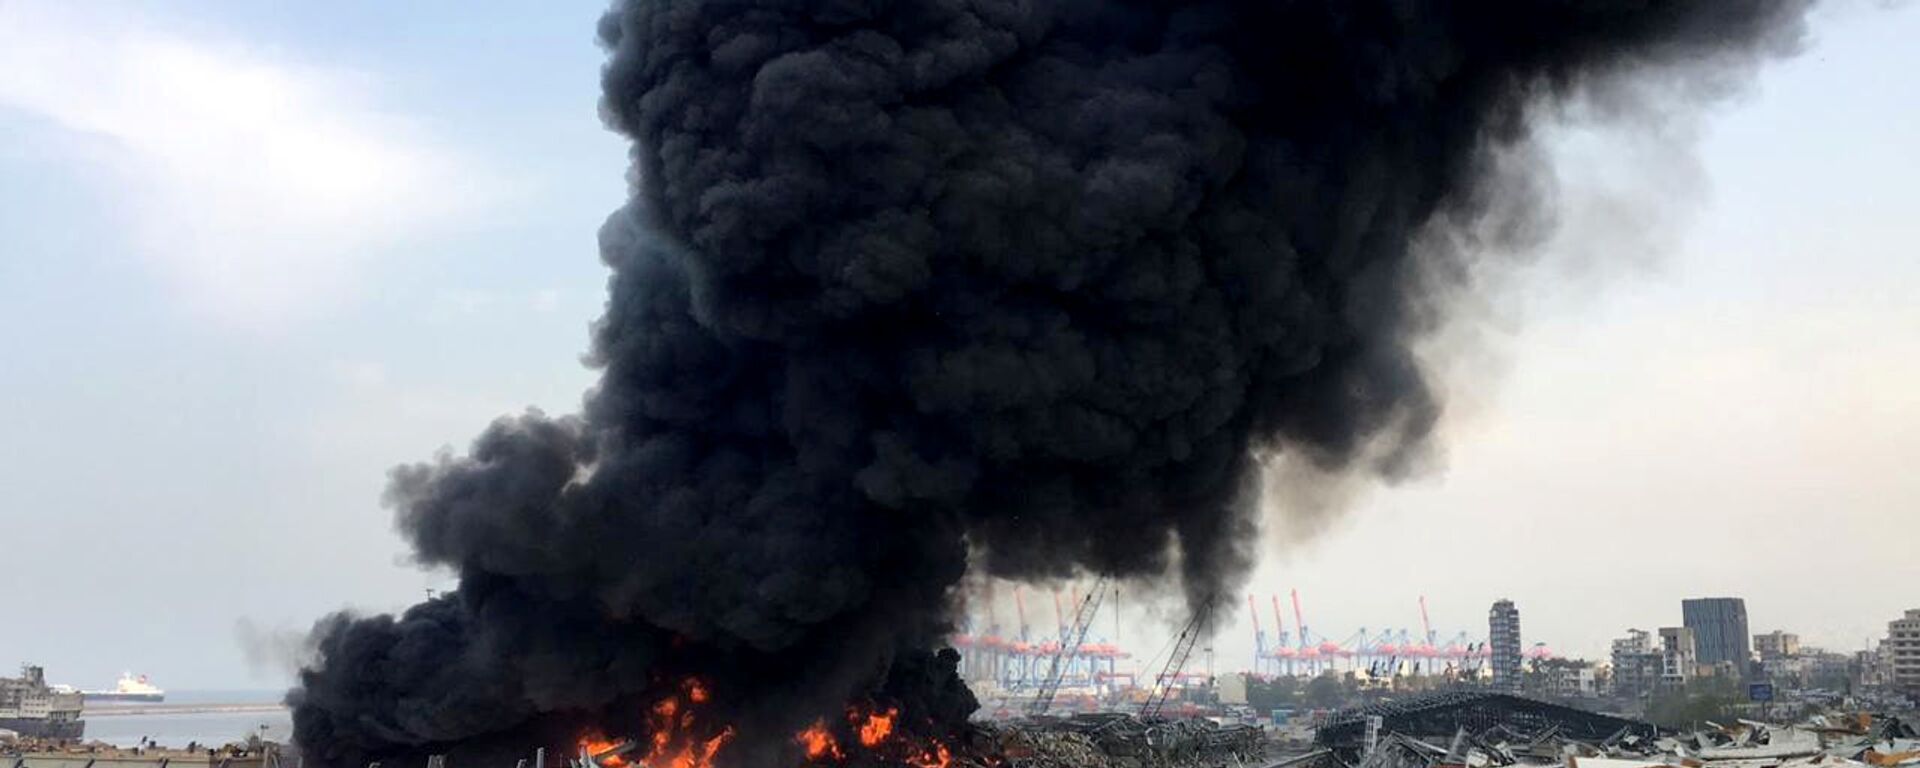 Lübnan'ın başkentinde, Beyrut Limanı'nda yangın, 10 Eylül 2020 - Sputnik Türkiye, 1920, 17.11.2021